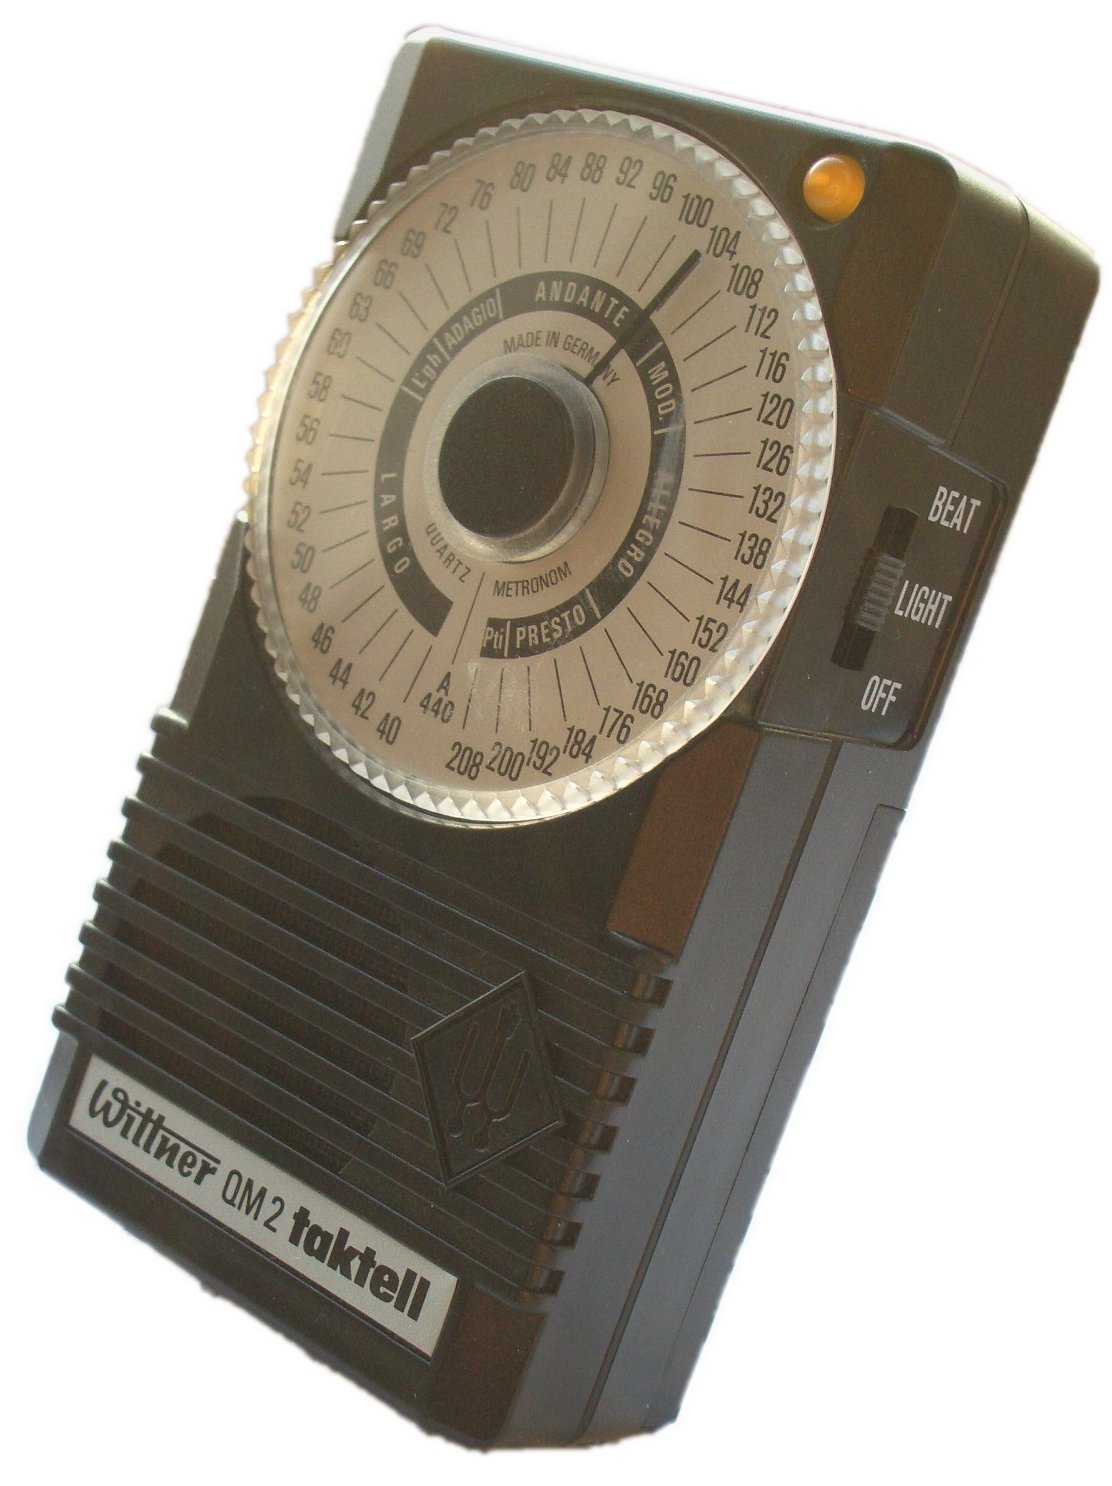 Electronic metronome